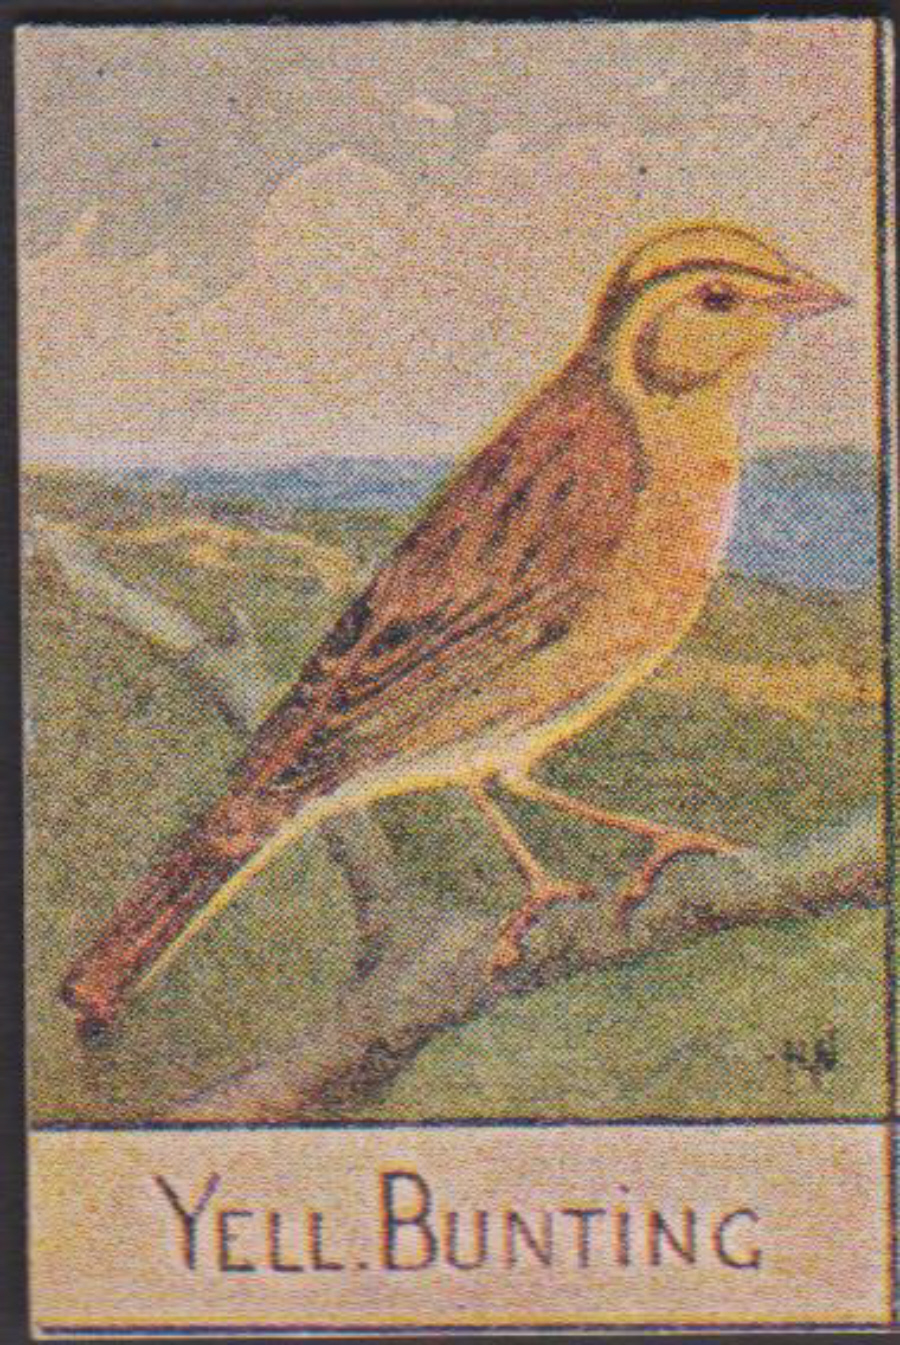 Spratt's British Bird Series Numbered No 73 Yell Bunting